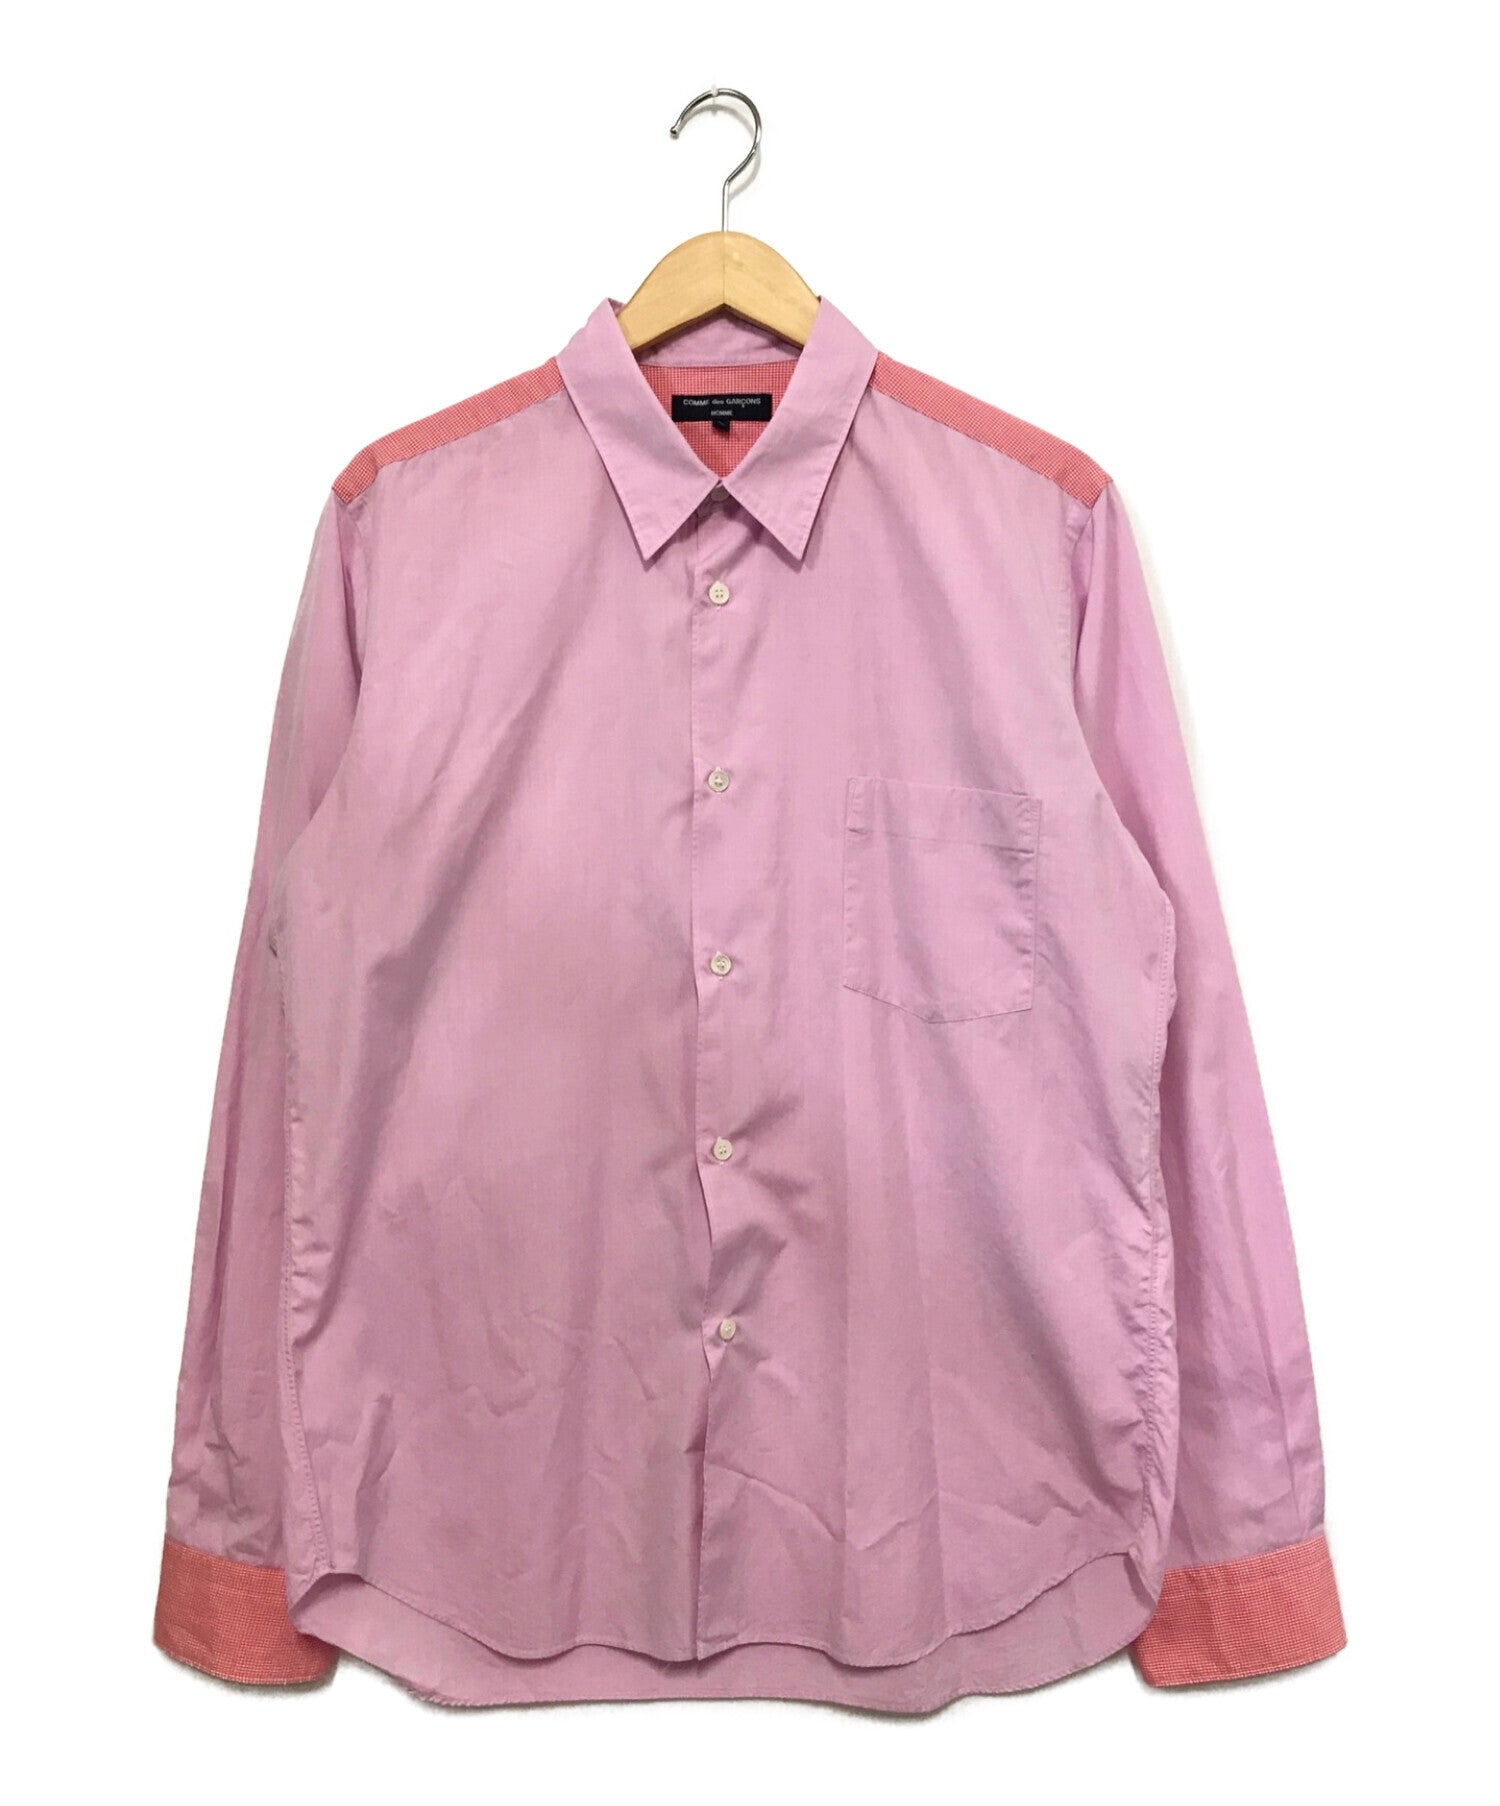 COMME des GARCONS tricot shirt HC-B118 | Archive Factory